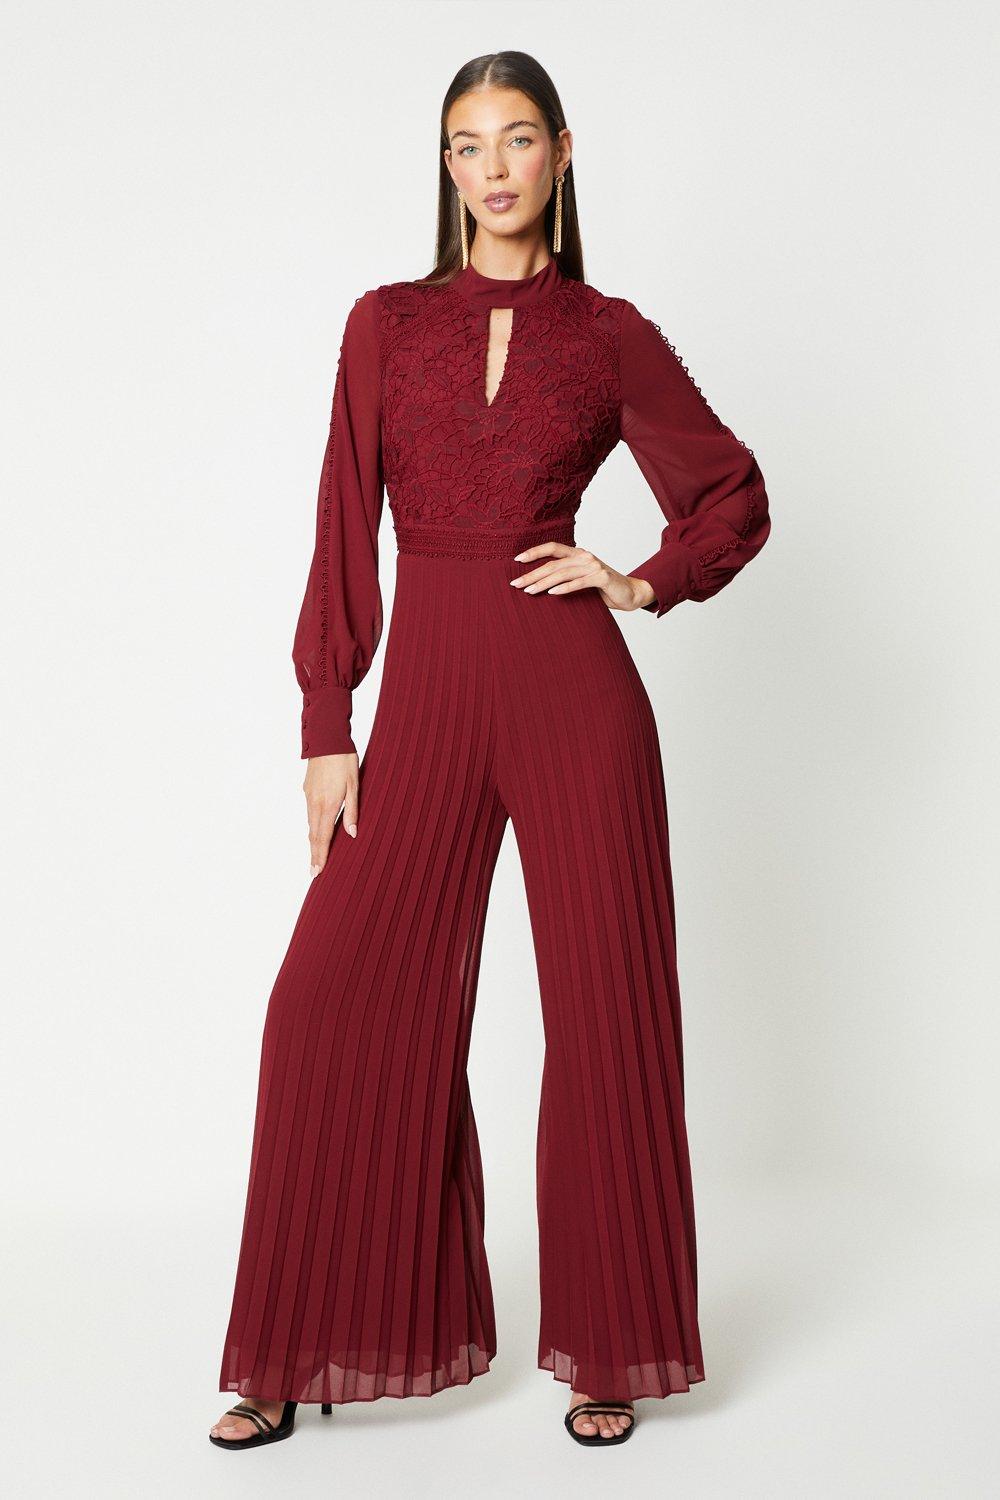 Lace Trim Blouson Sleeve Jumpsuit - Red